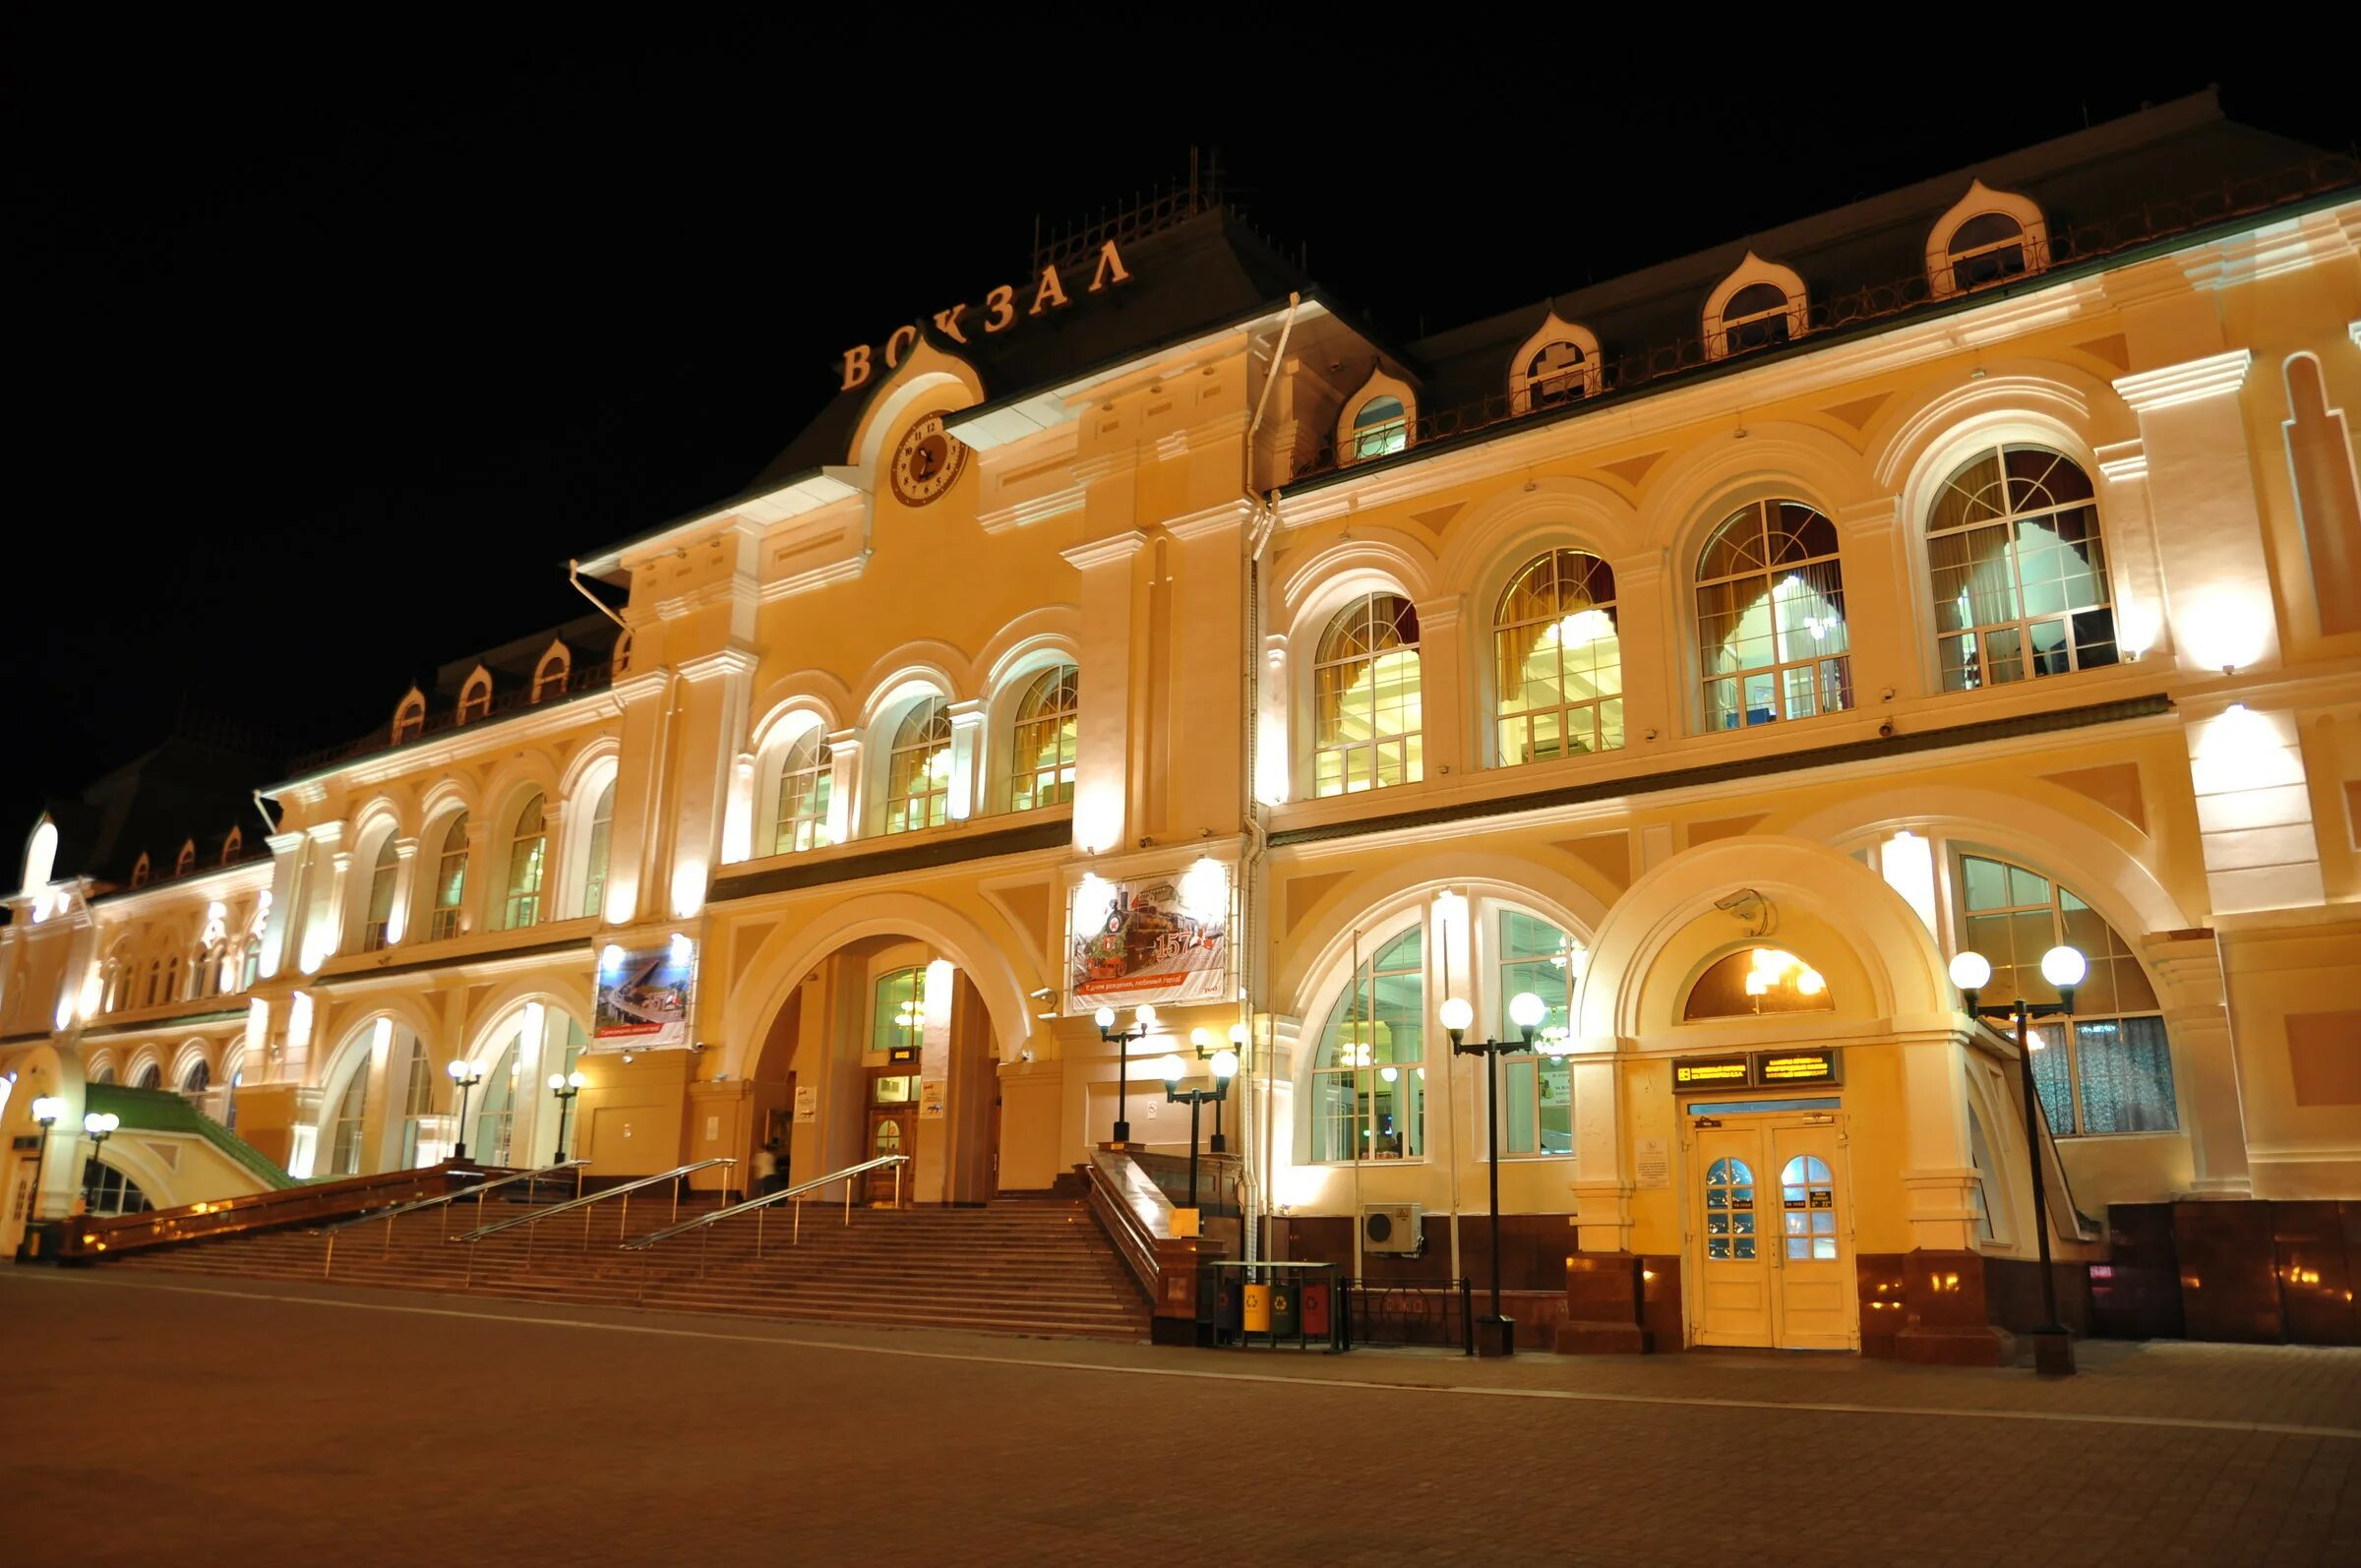 ЖД вокзал Хабаровск. Архитектурные особенности вокзала Хабаровск. ЖД вокзал Хабаровск раньше и сейчас. Вокзал хабаровск телефон